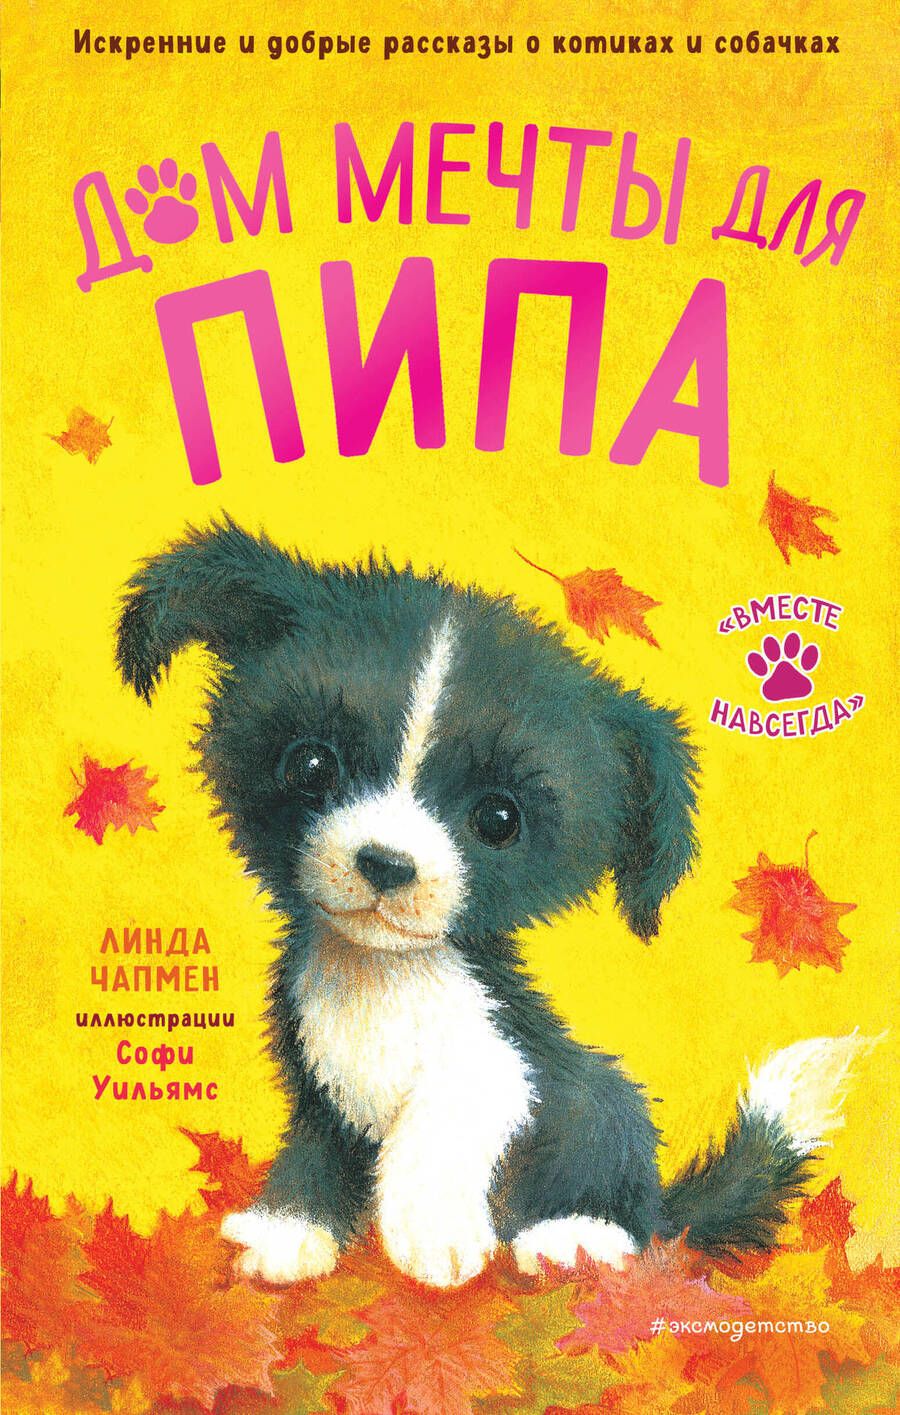 Обложка книги "Линда Чапмен: Дом мечты для Пипа"